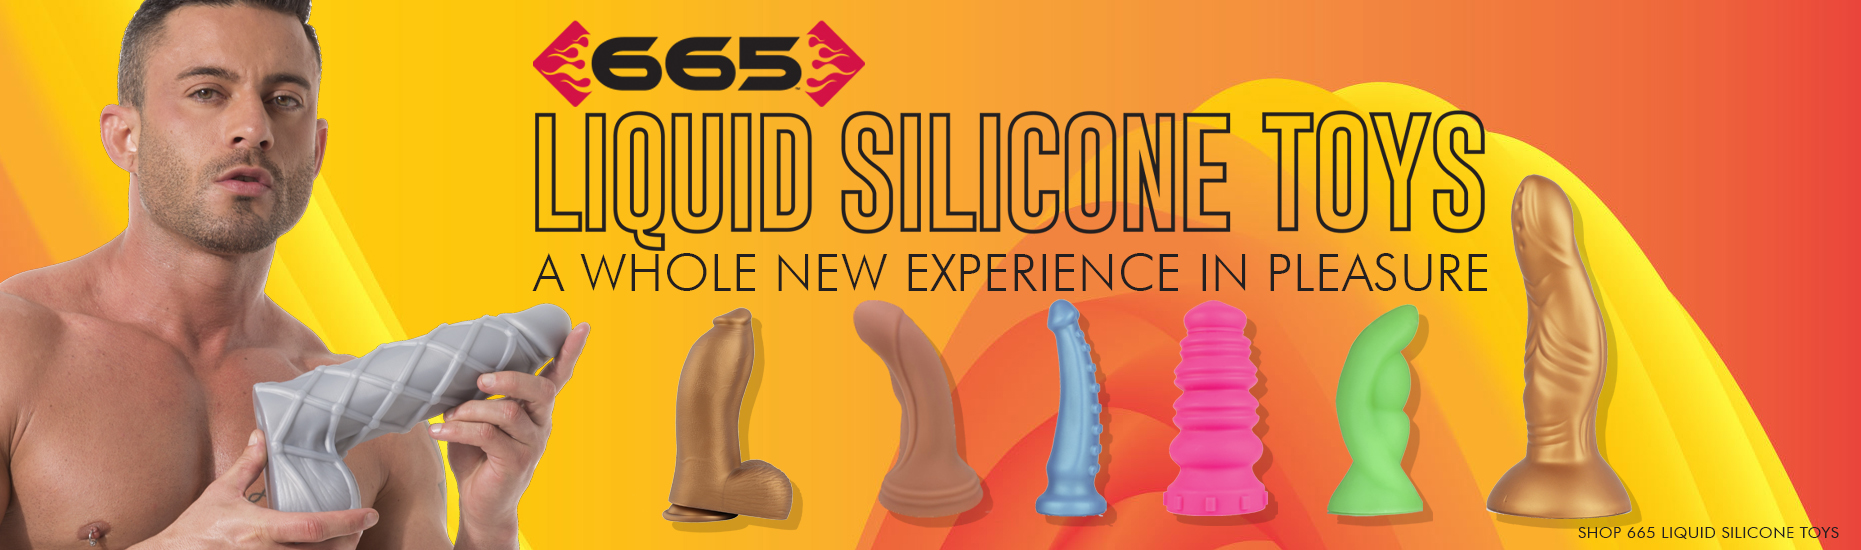 665 Liquid Silicone Toys